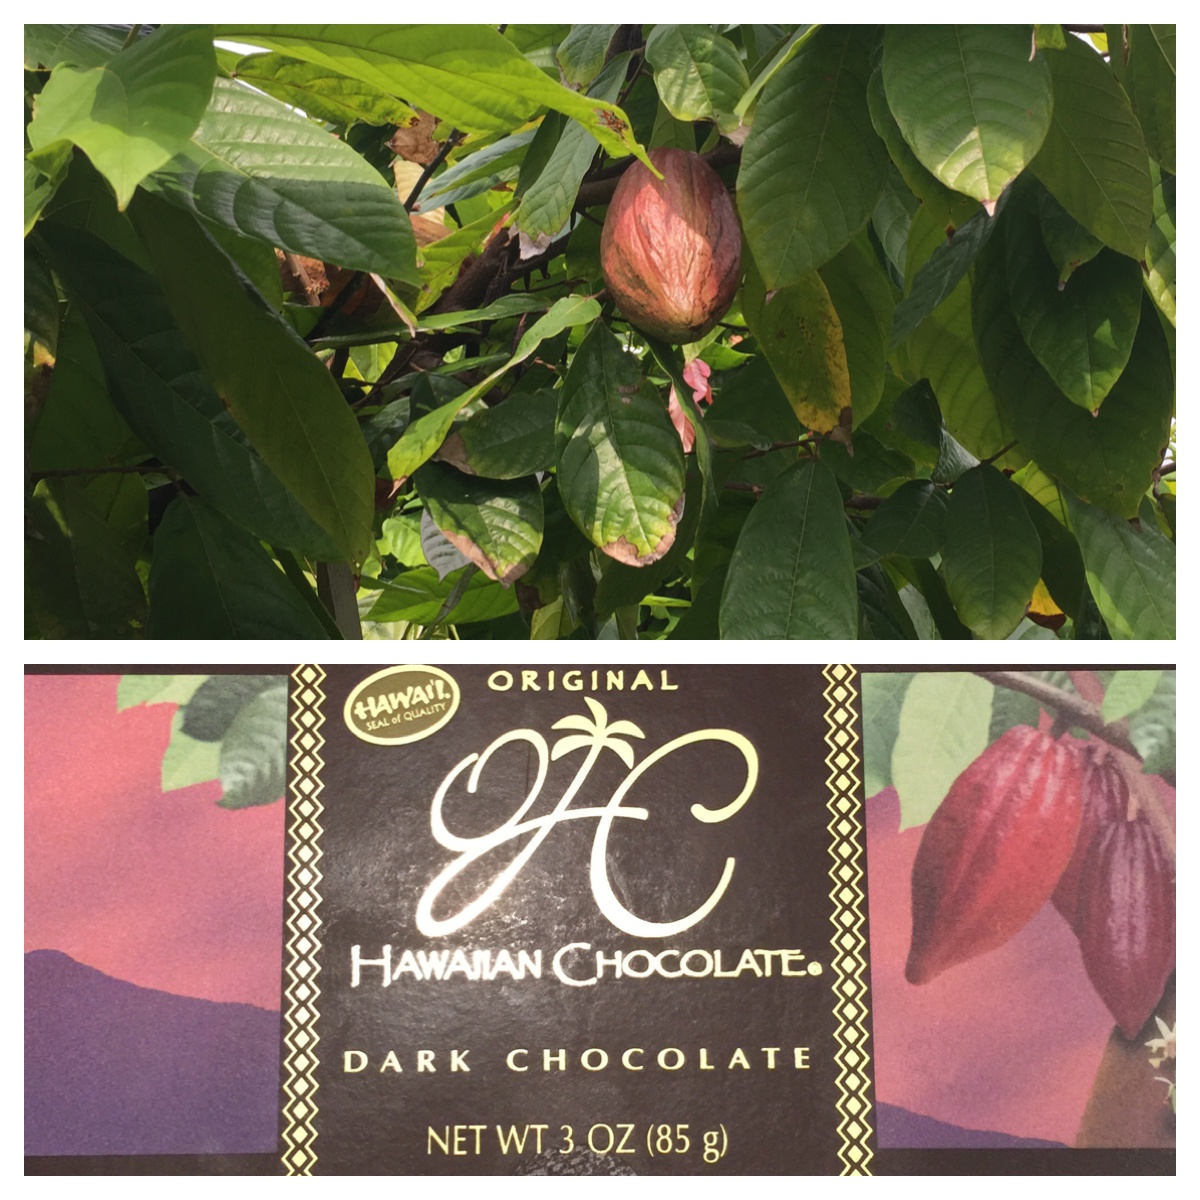 original hawaiian chocolate factory tour